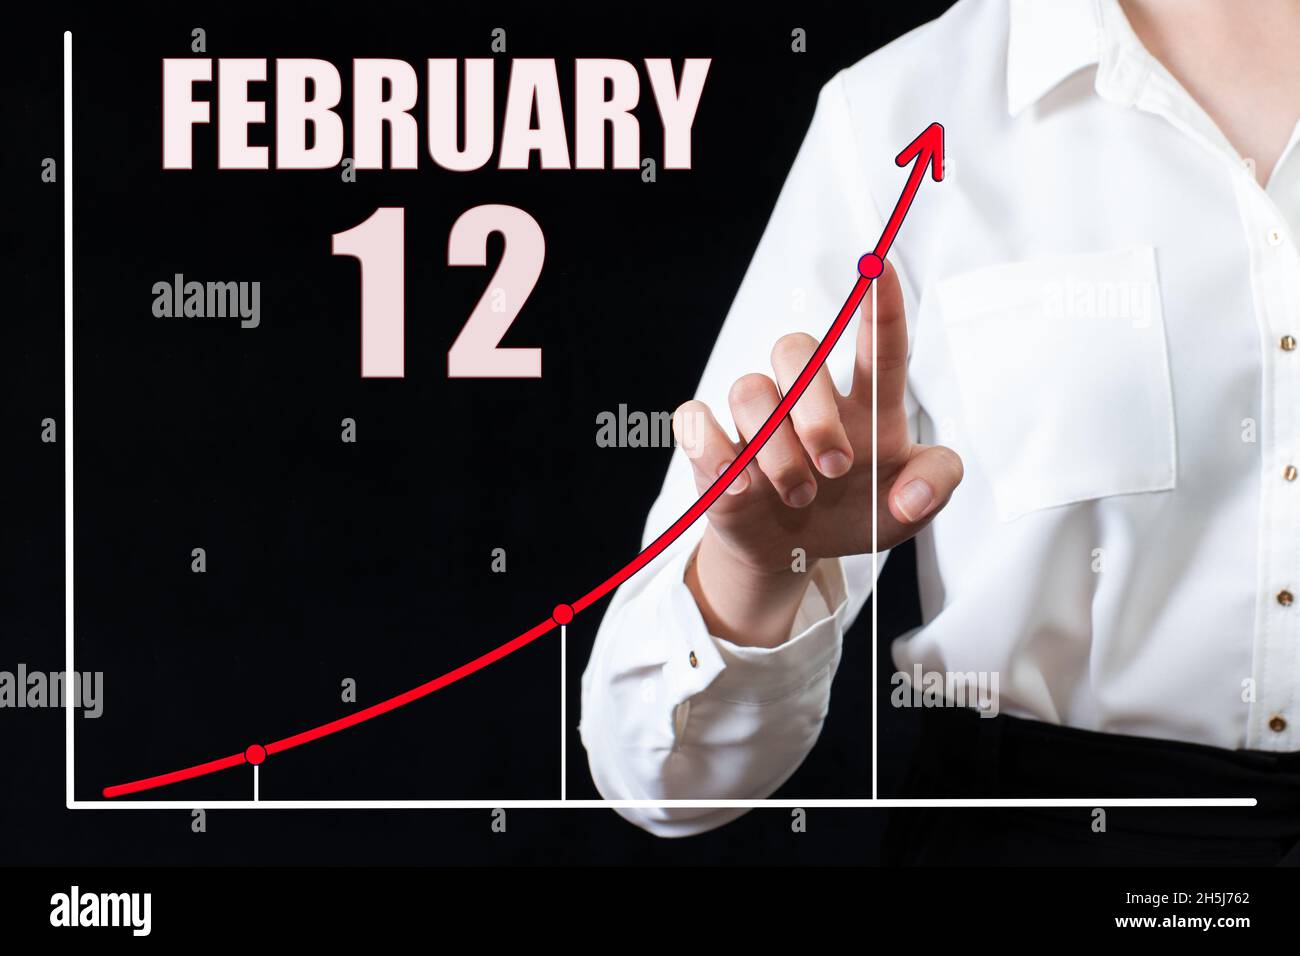 12 febbraio. La mano di una donna d'affari indica il grafico e un calendario con la data del 12 febbraio. Obiettivi aziendali per il giorno. Inverno mont Foto Stock